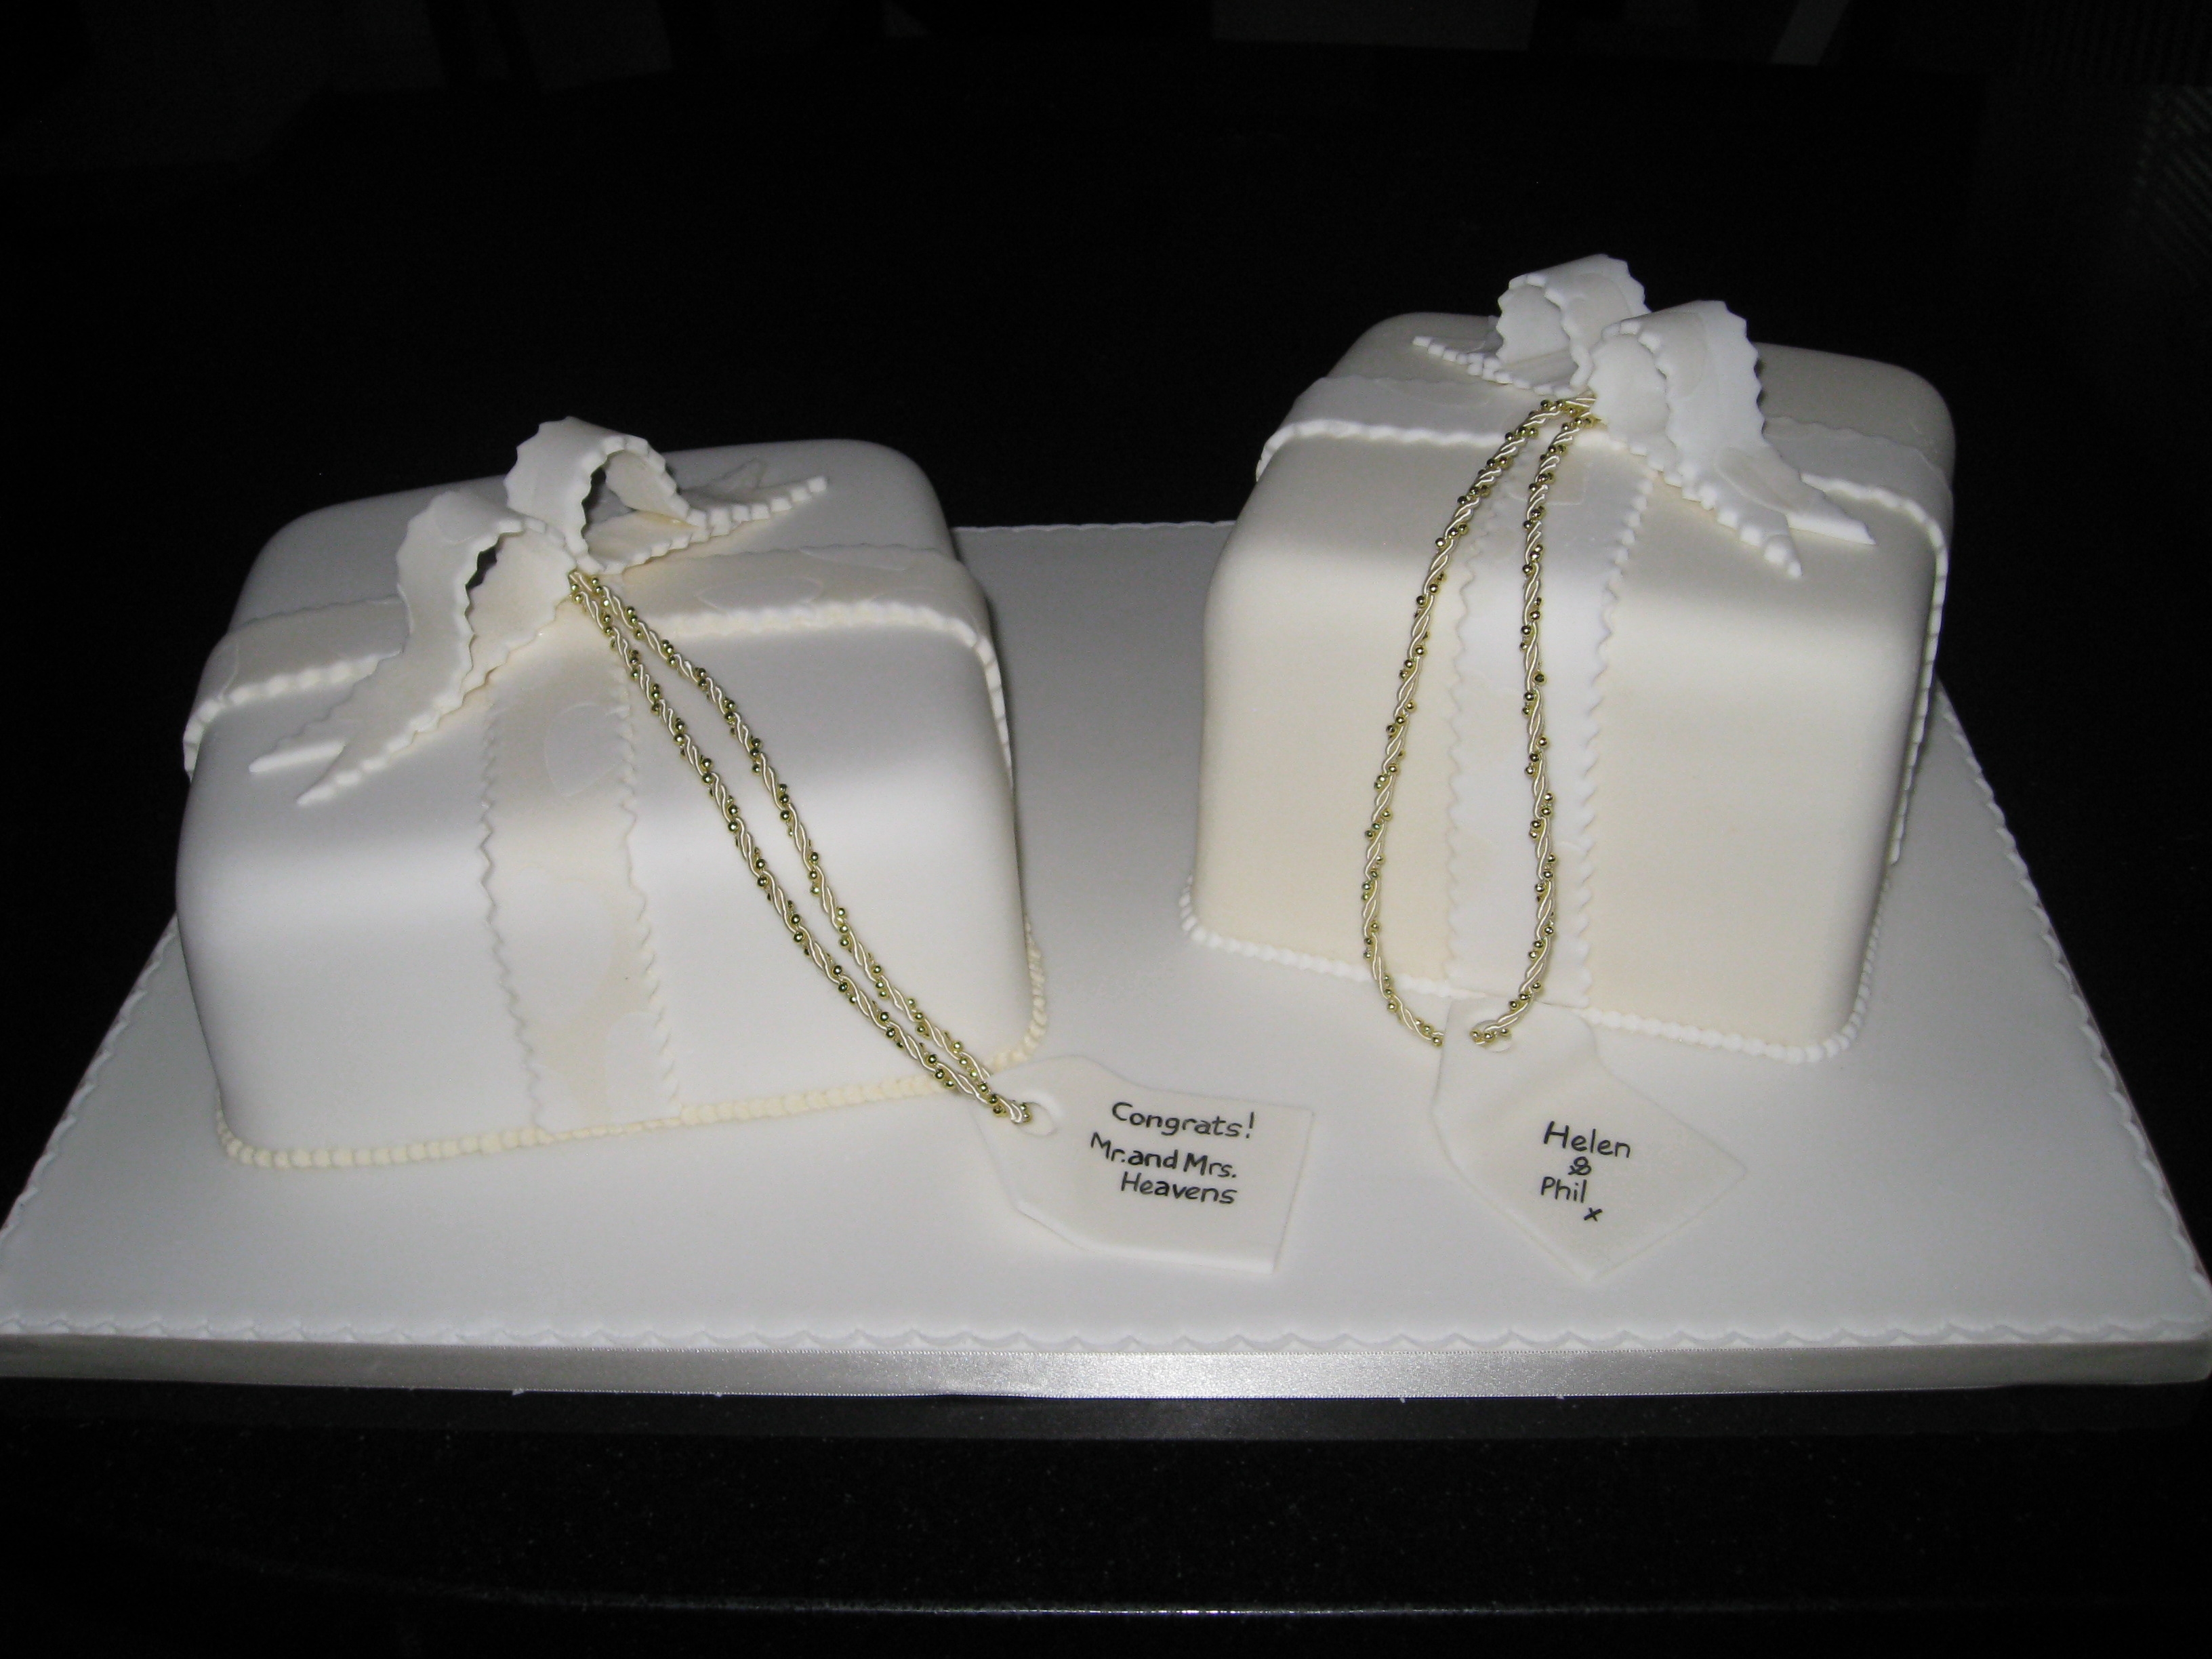 Simple double gift wedding cake